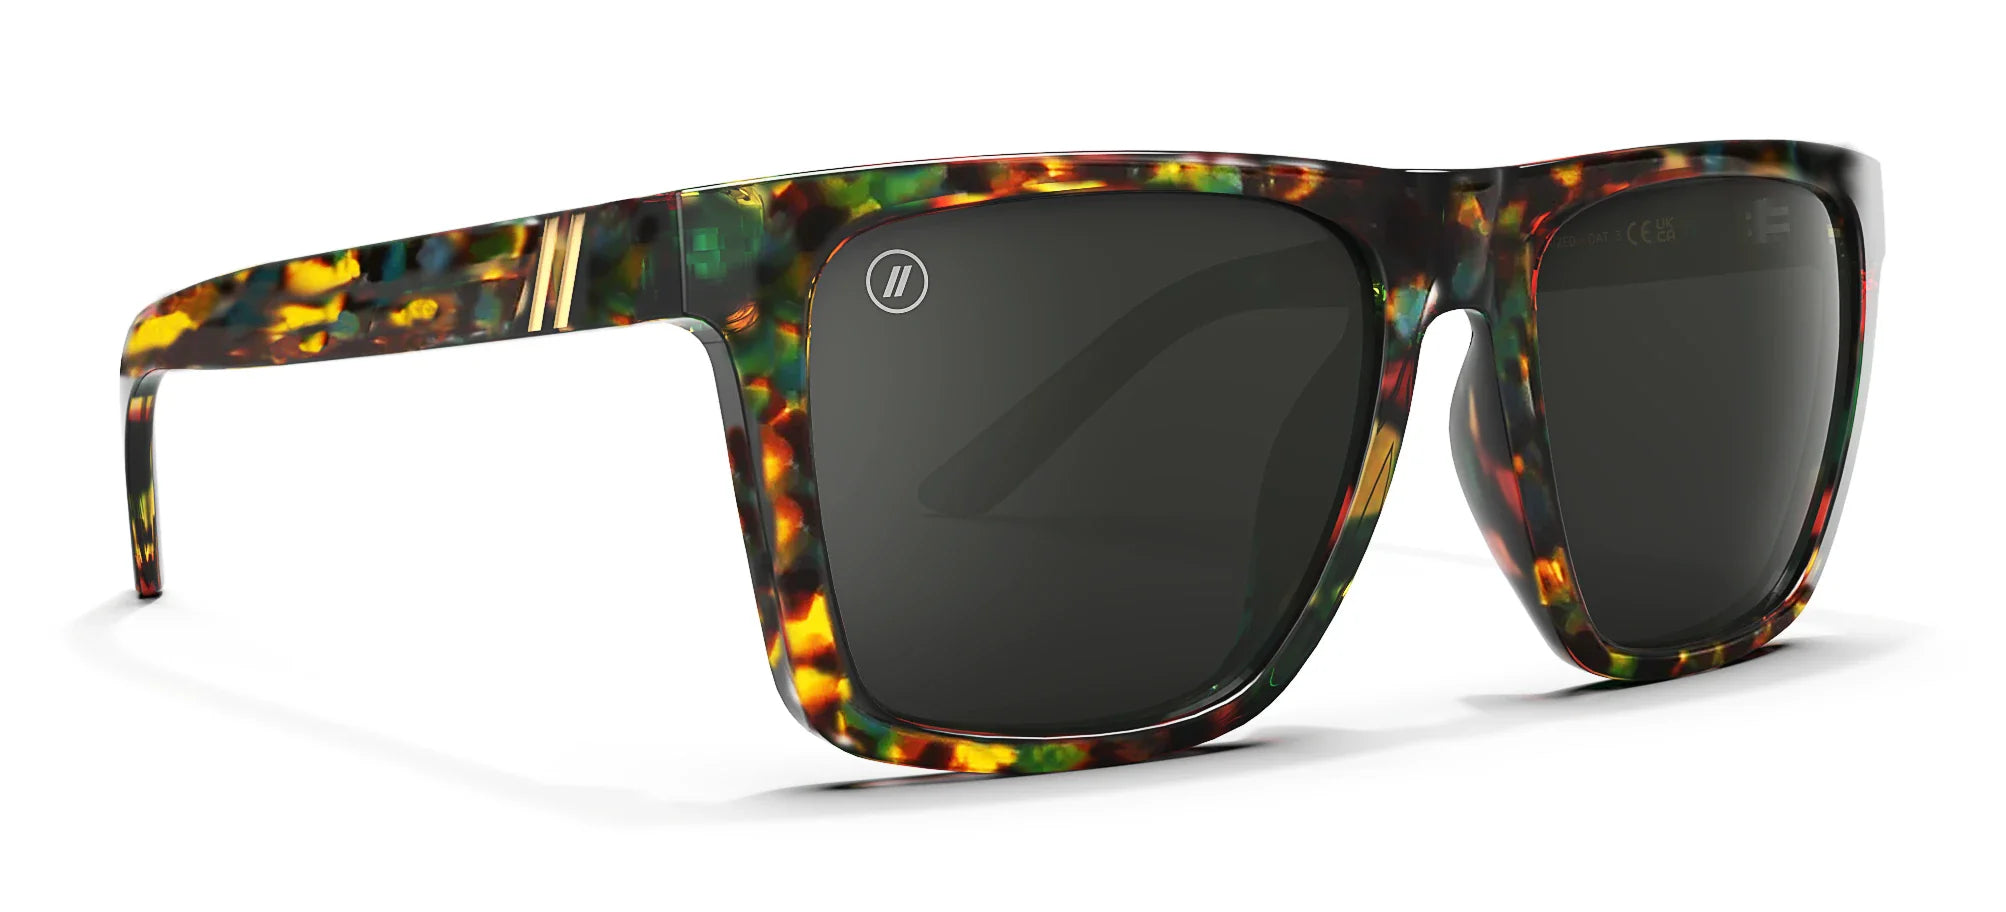 Stone Breaker Polarized Sunglasses - Green, Teal, Orange & Gold Tortoise Frame & Smoke Lens